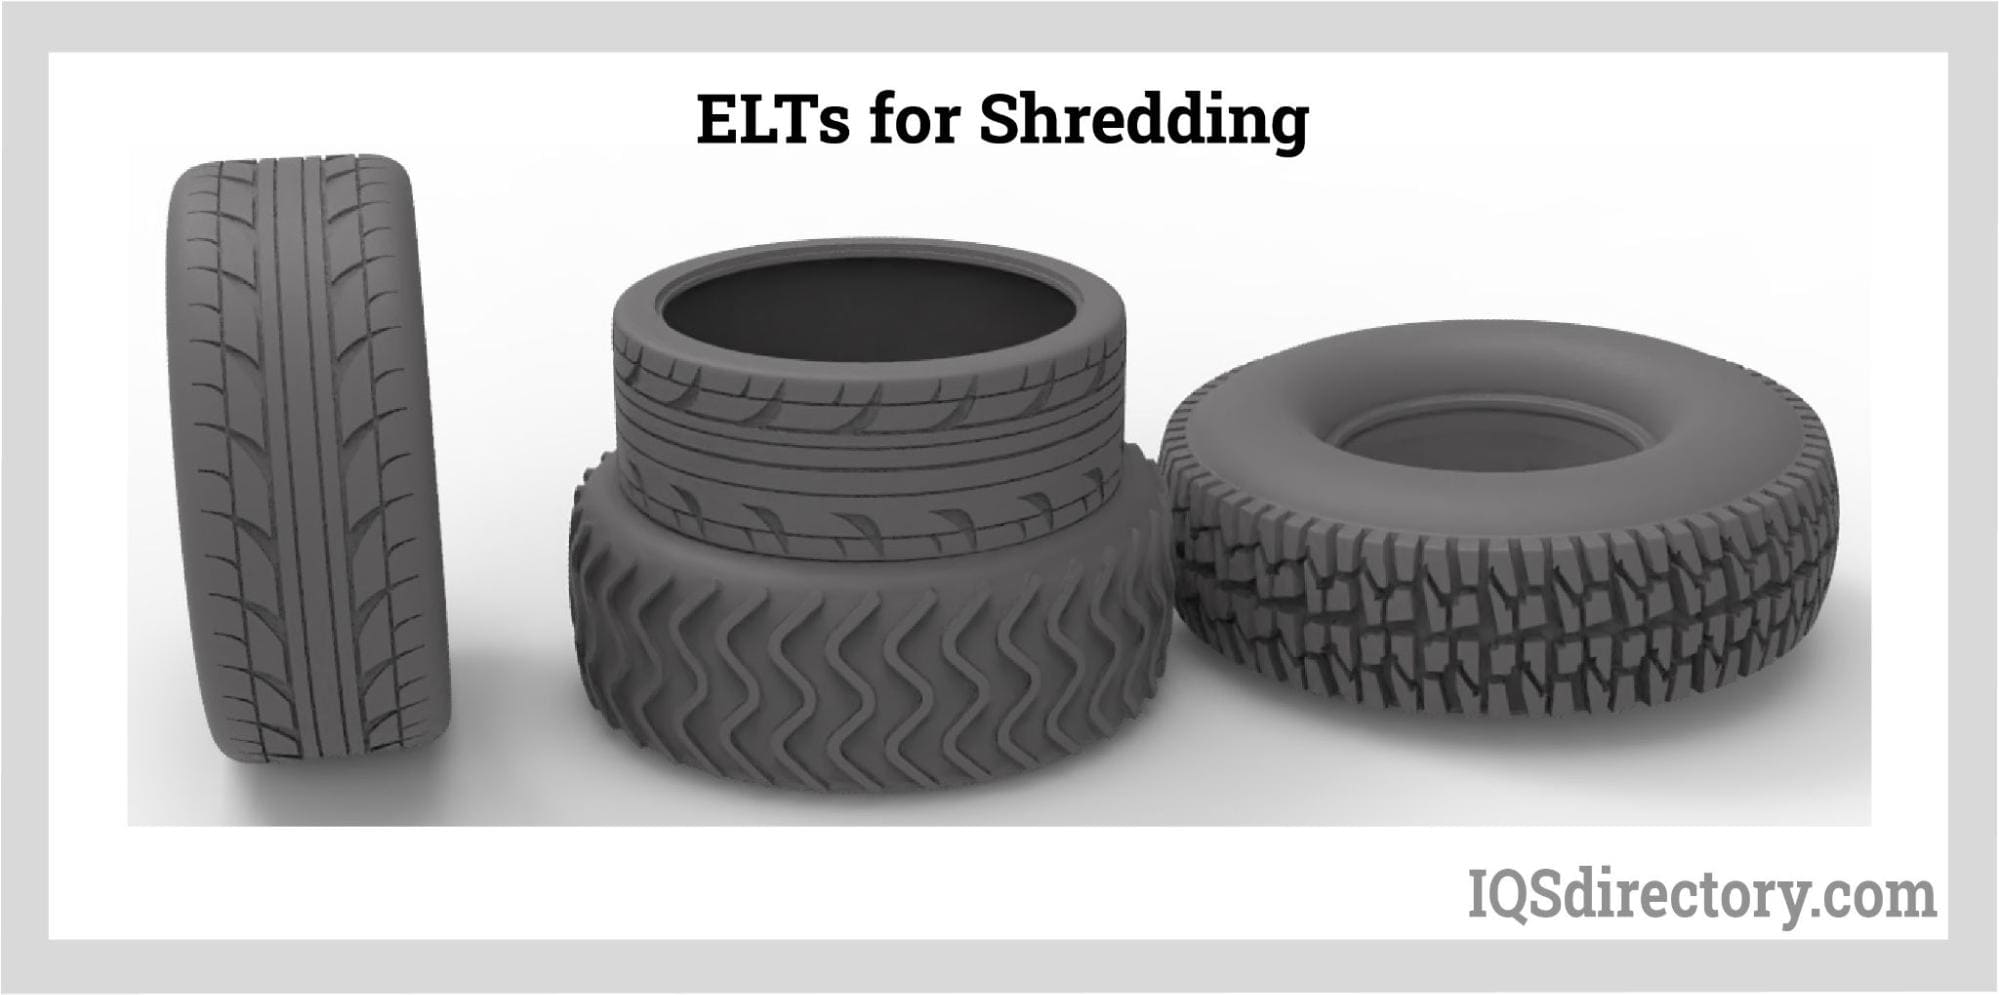 ELTs for Shredding